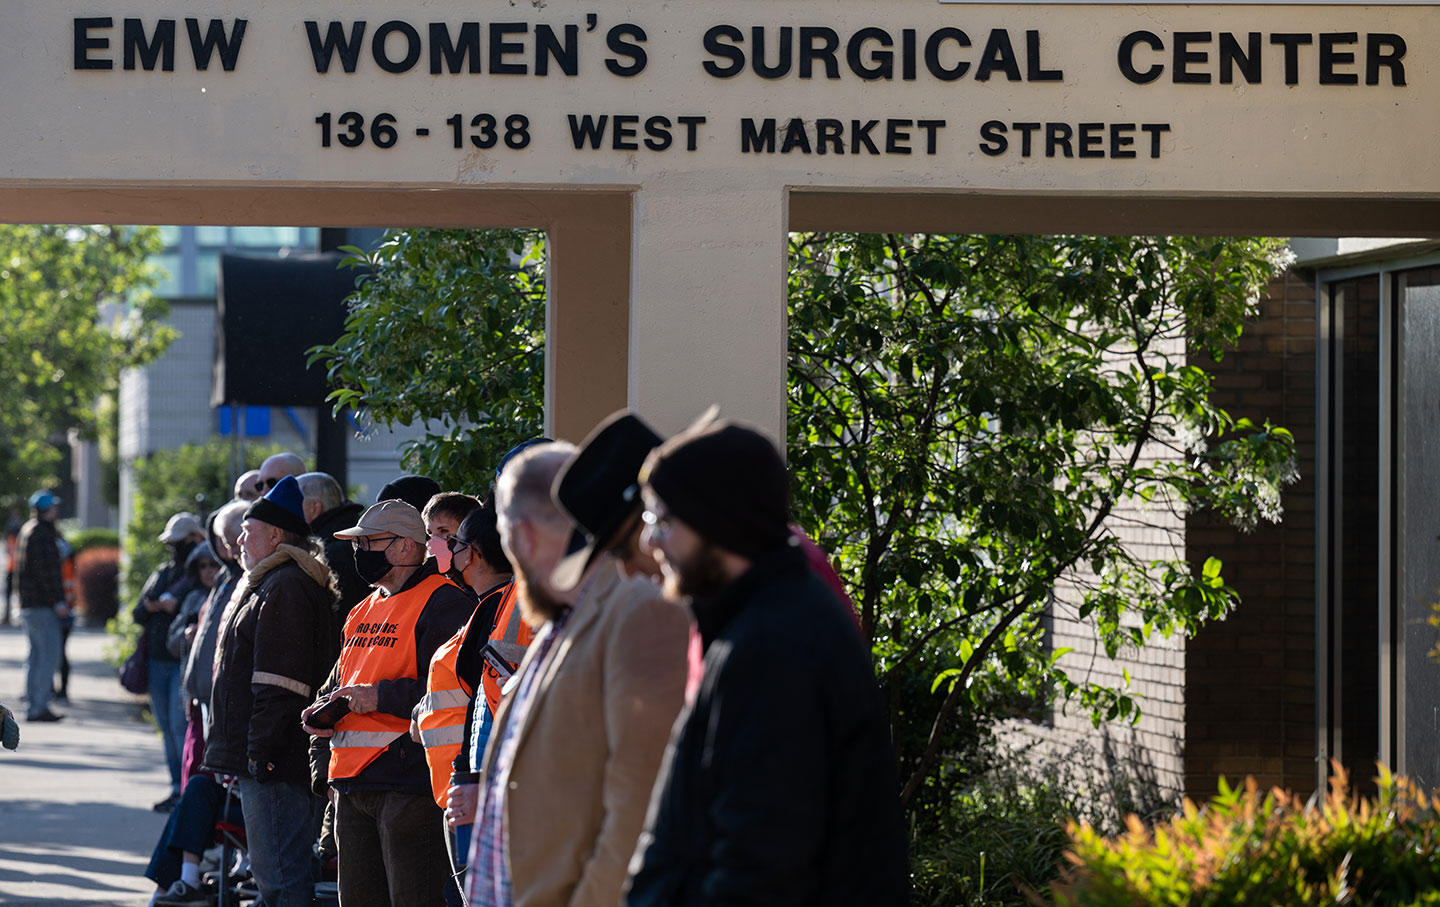 EMW Women's Surgical Center in Louisville